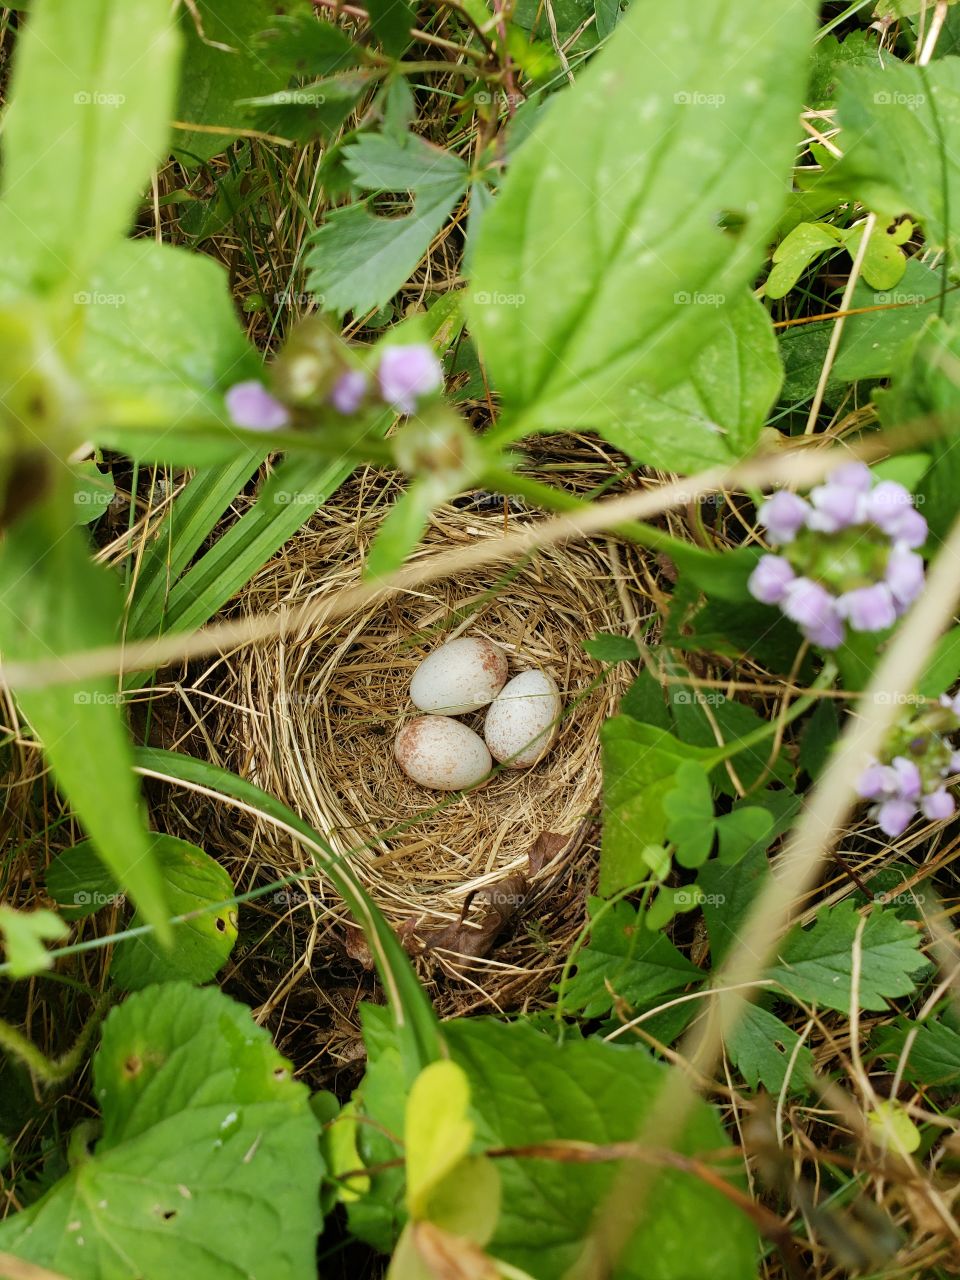 ground nest